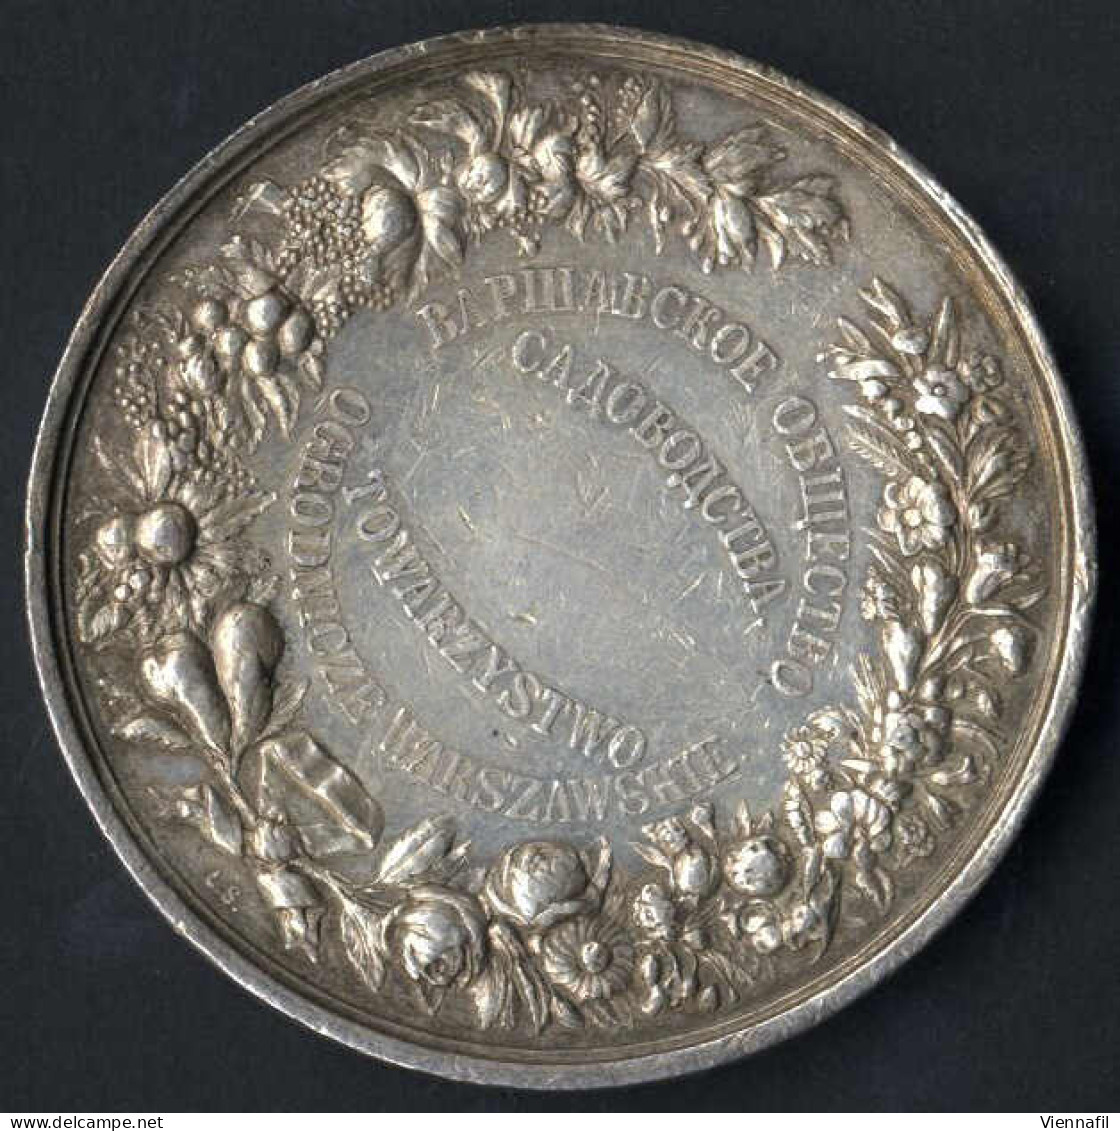 Medaille Der Warschauer Gartenbaugenossenschaft, Gartenbauausstellung Warschau 1895, Silbermedaille Von L. Steinman, Gep - Polen